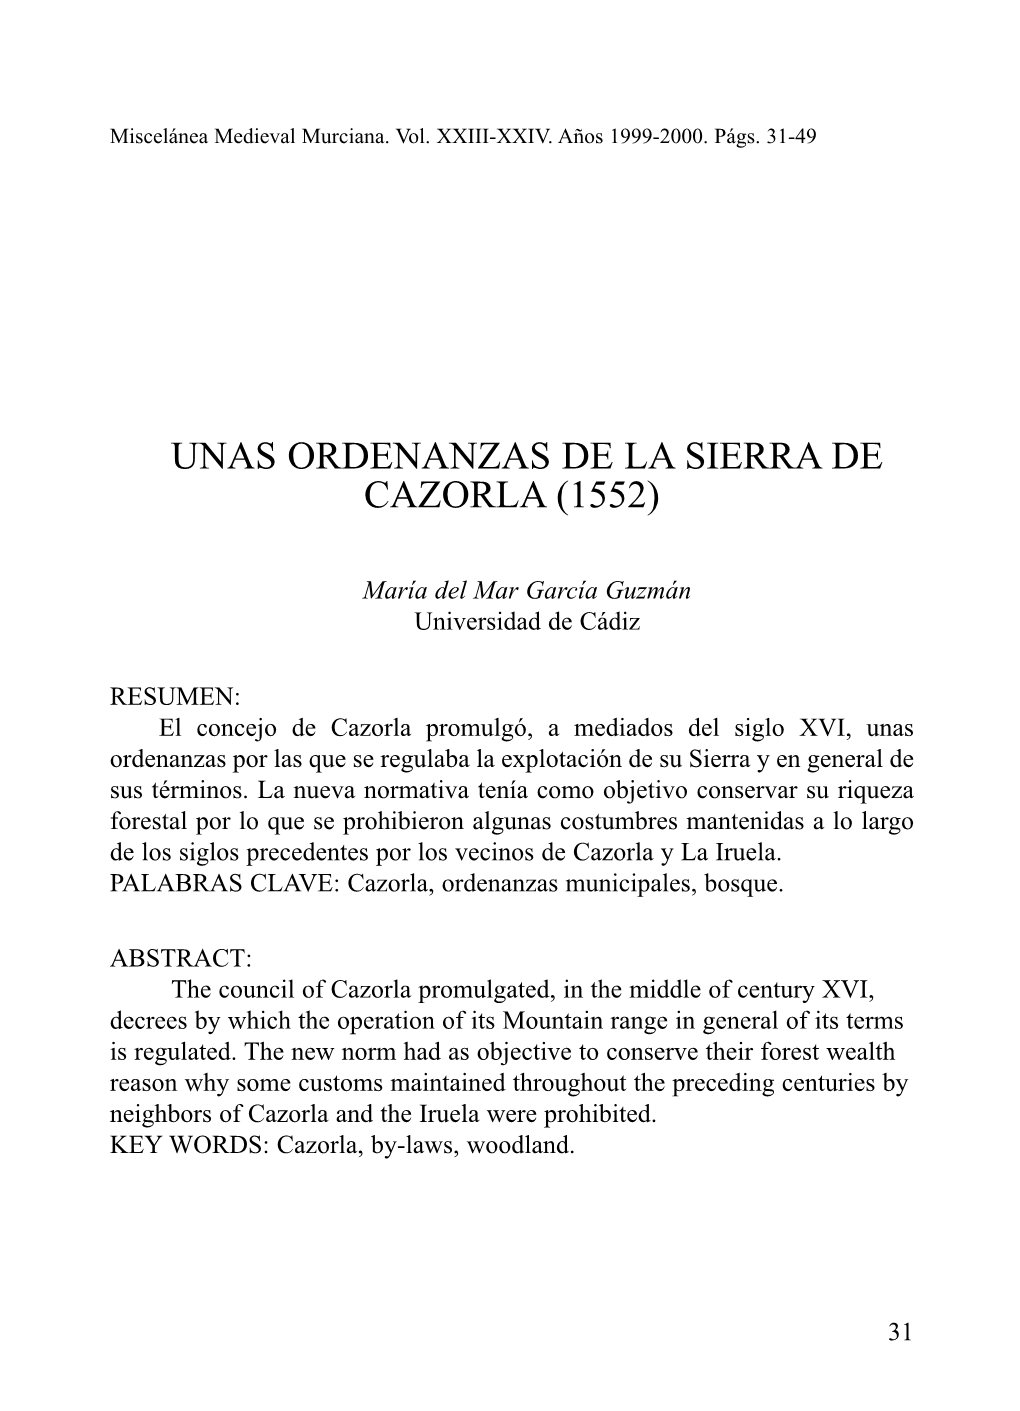 Unas Ordenanzas De La Sierra De Cazorla (1552)